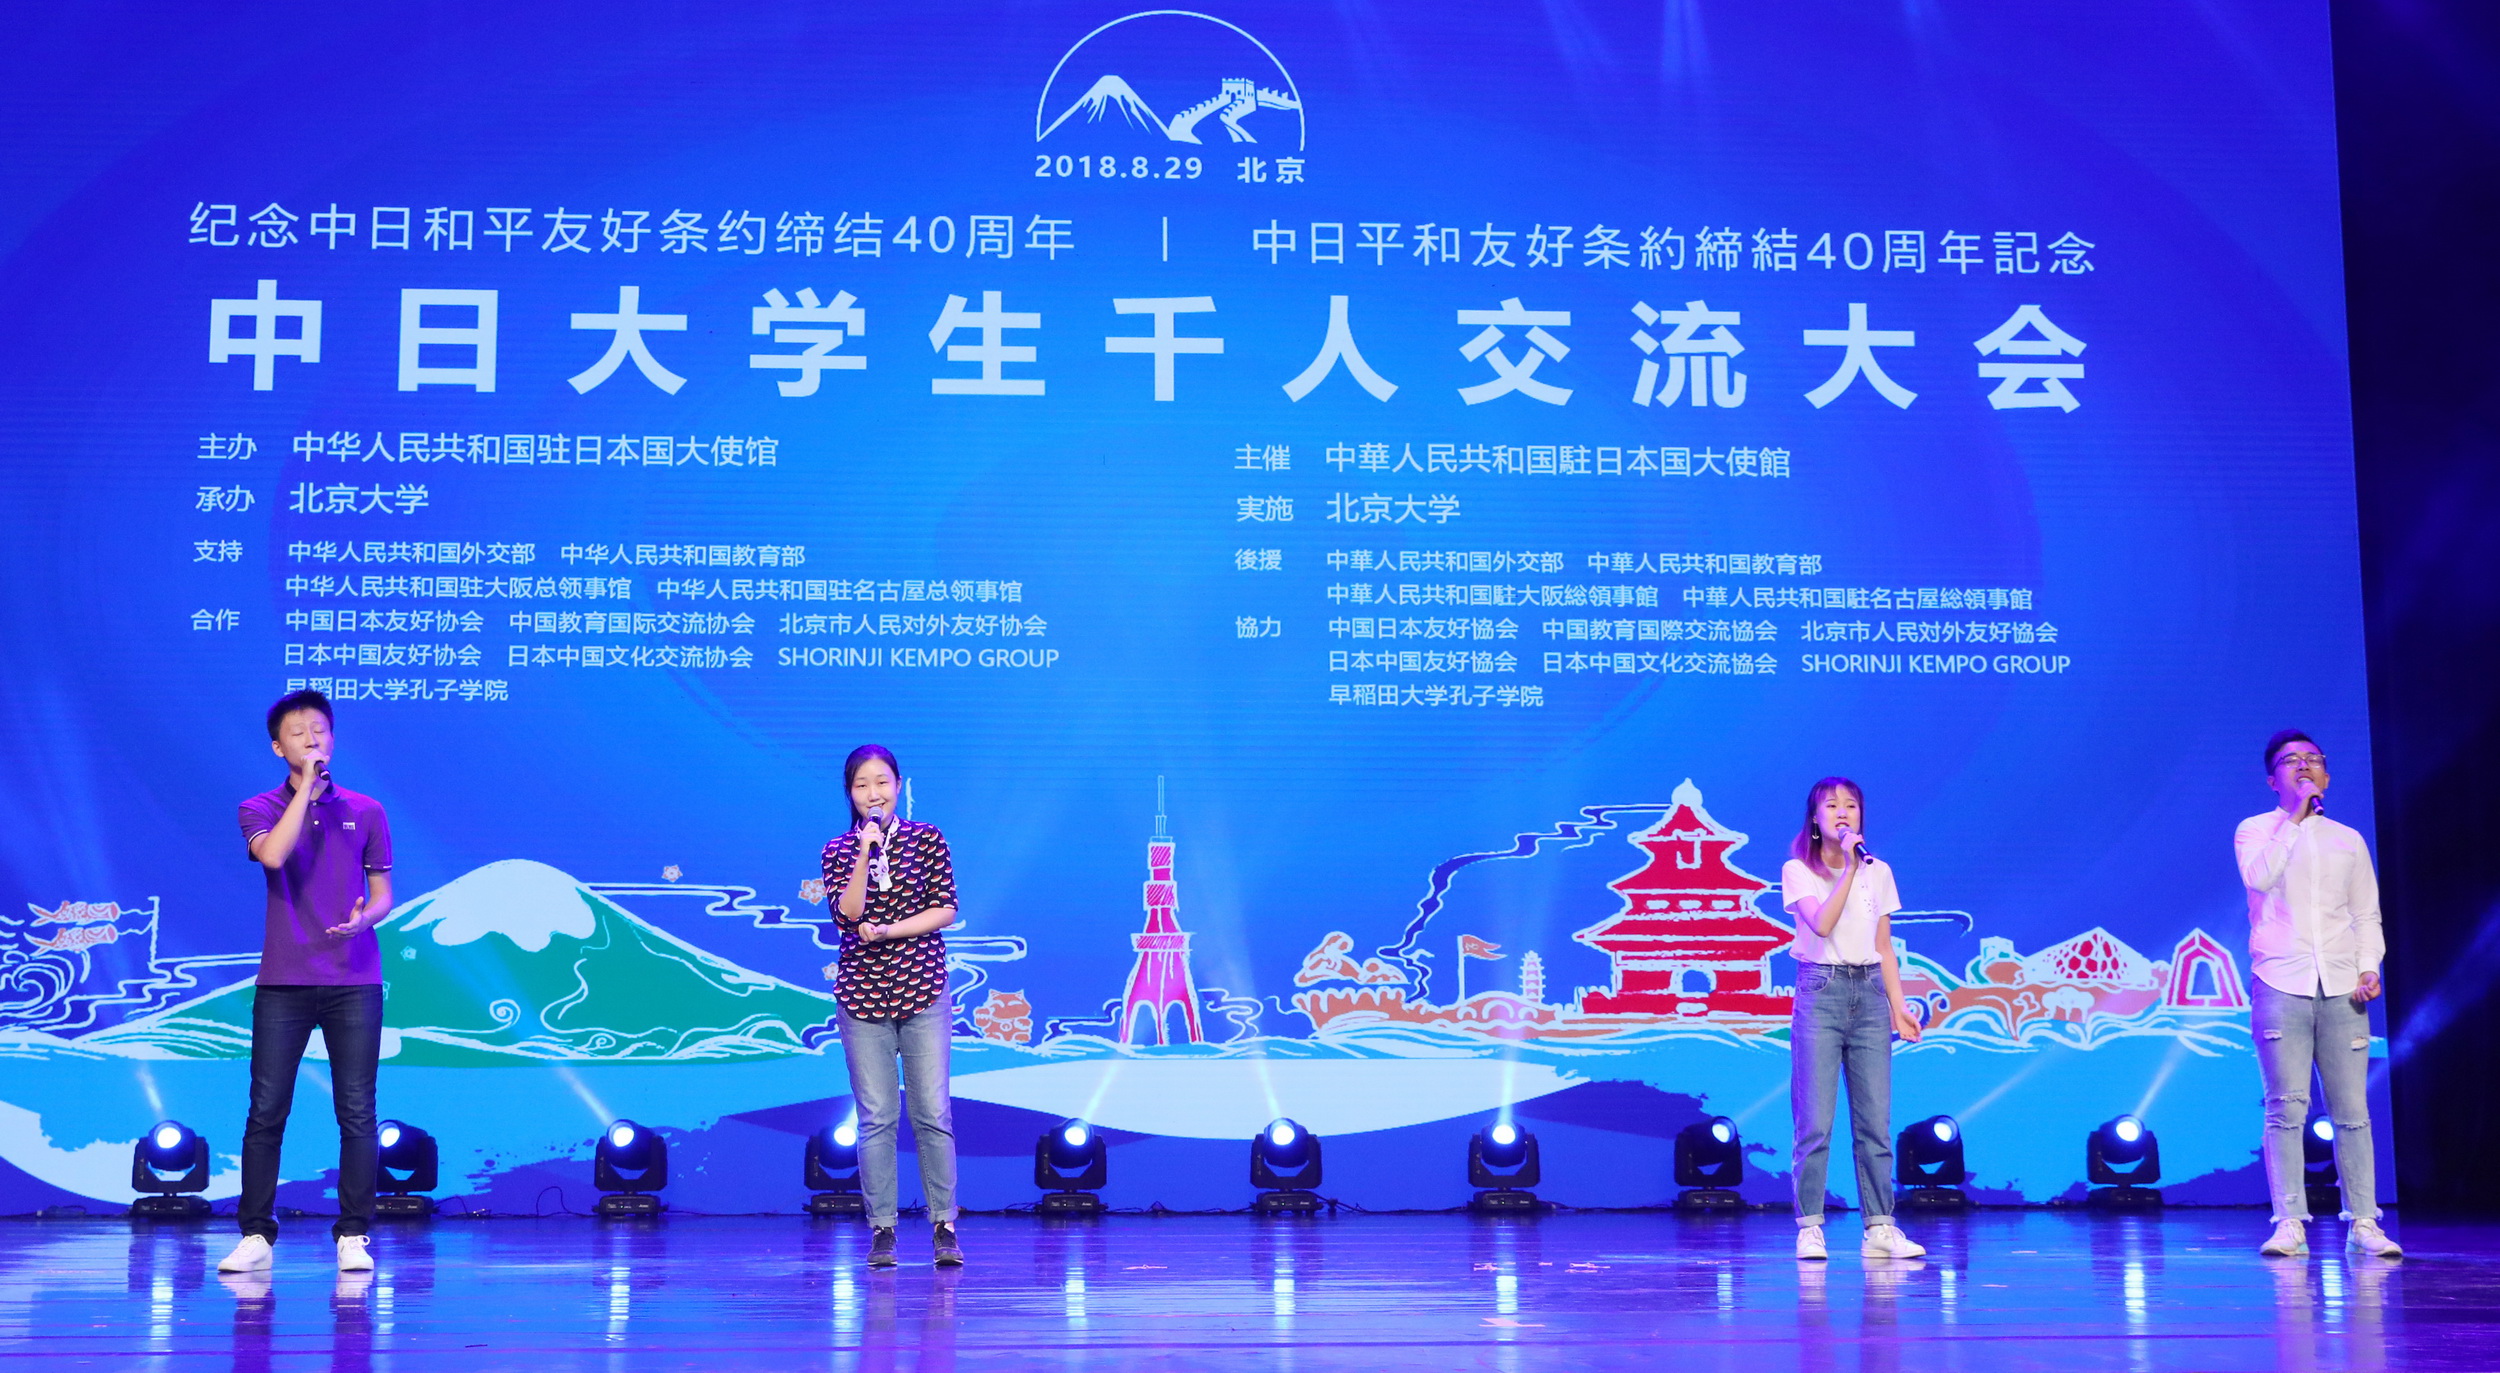 北京大学で「中日平和友好条約」締結４０周年記念中日大学生千人交流 